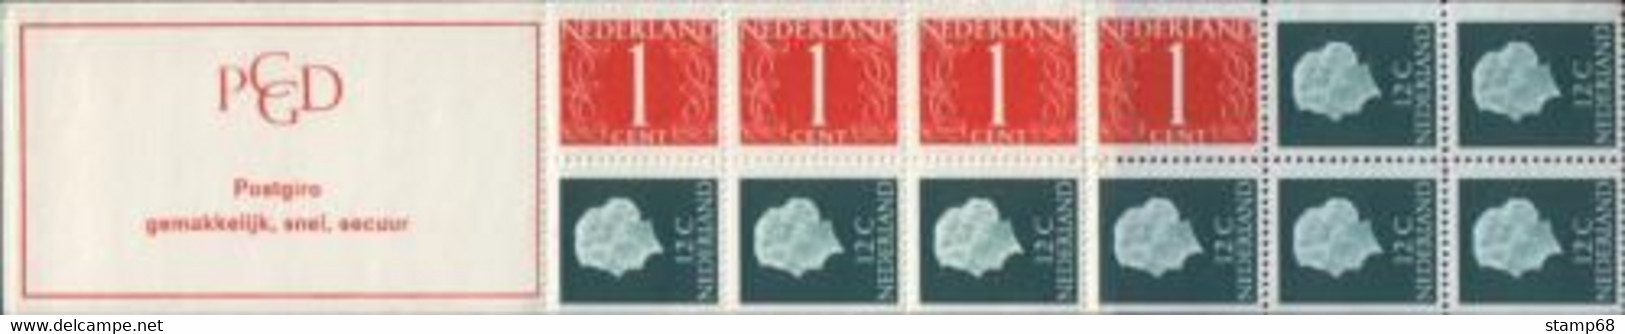 Nederland NVPH PB8a Postzegelboekje 1969 MNH Postfris - Markenheftchen Und Rollen